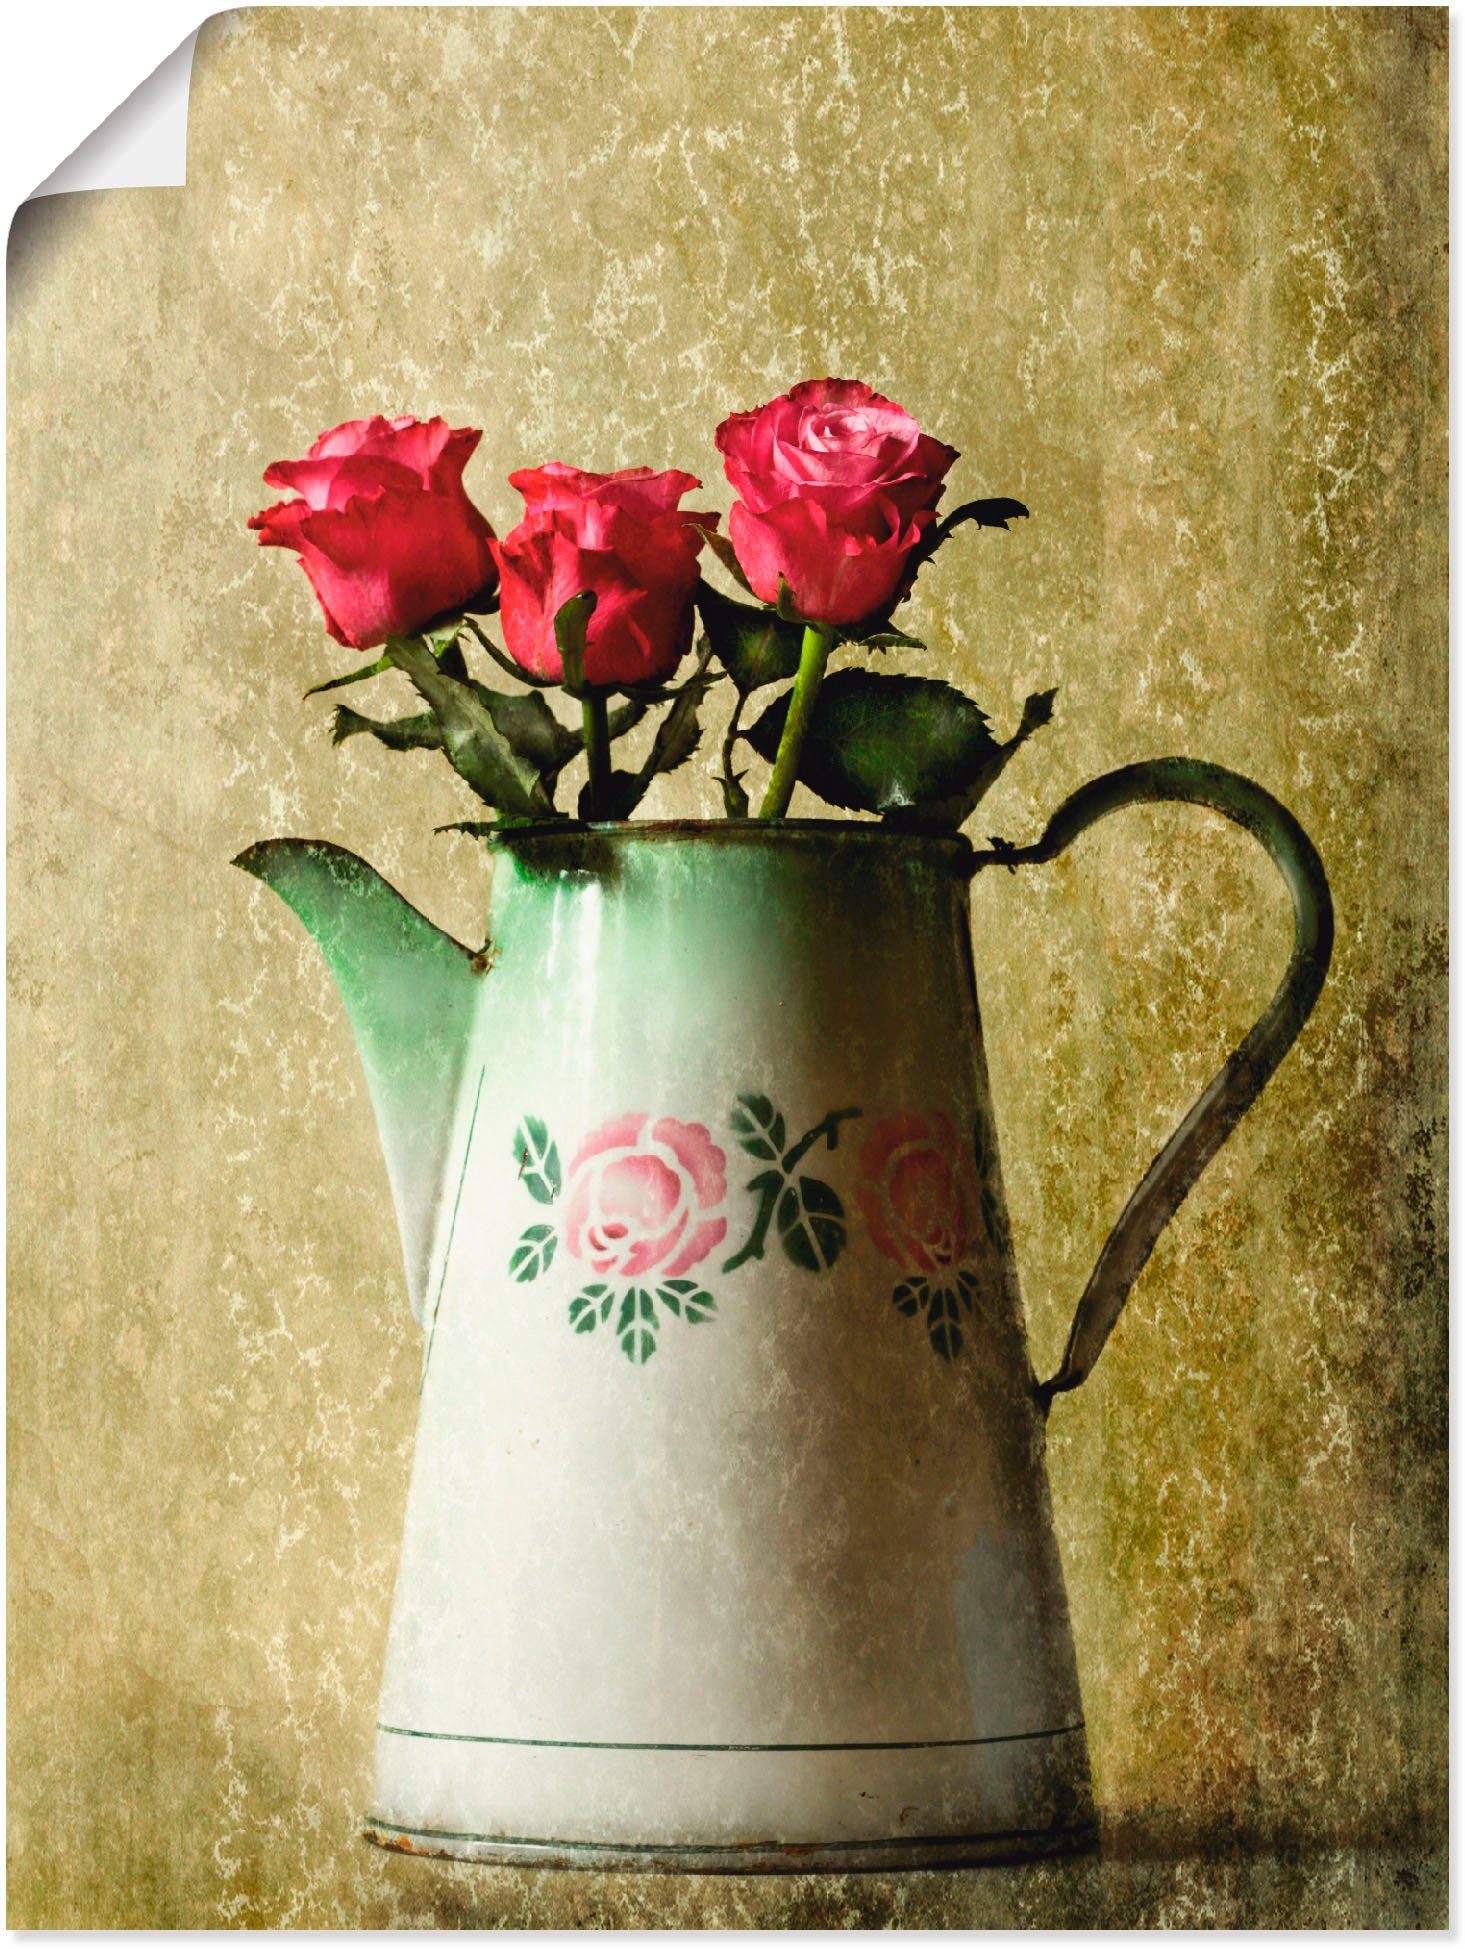 Artland Artprint Drie rozen in een oude kan in vele afmetingen & productsoorten -artprint op linnen, poster, muursticker / wandfolie ook geschikt voor de badkamer (1 stuk)